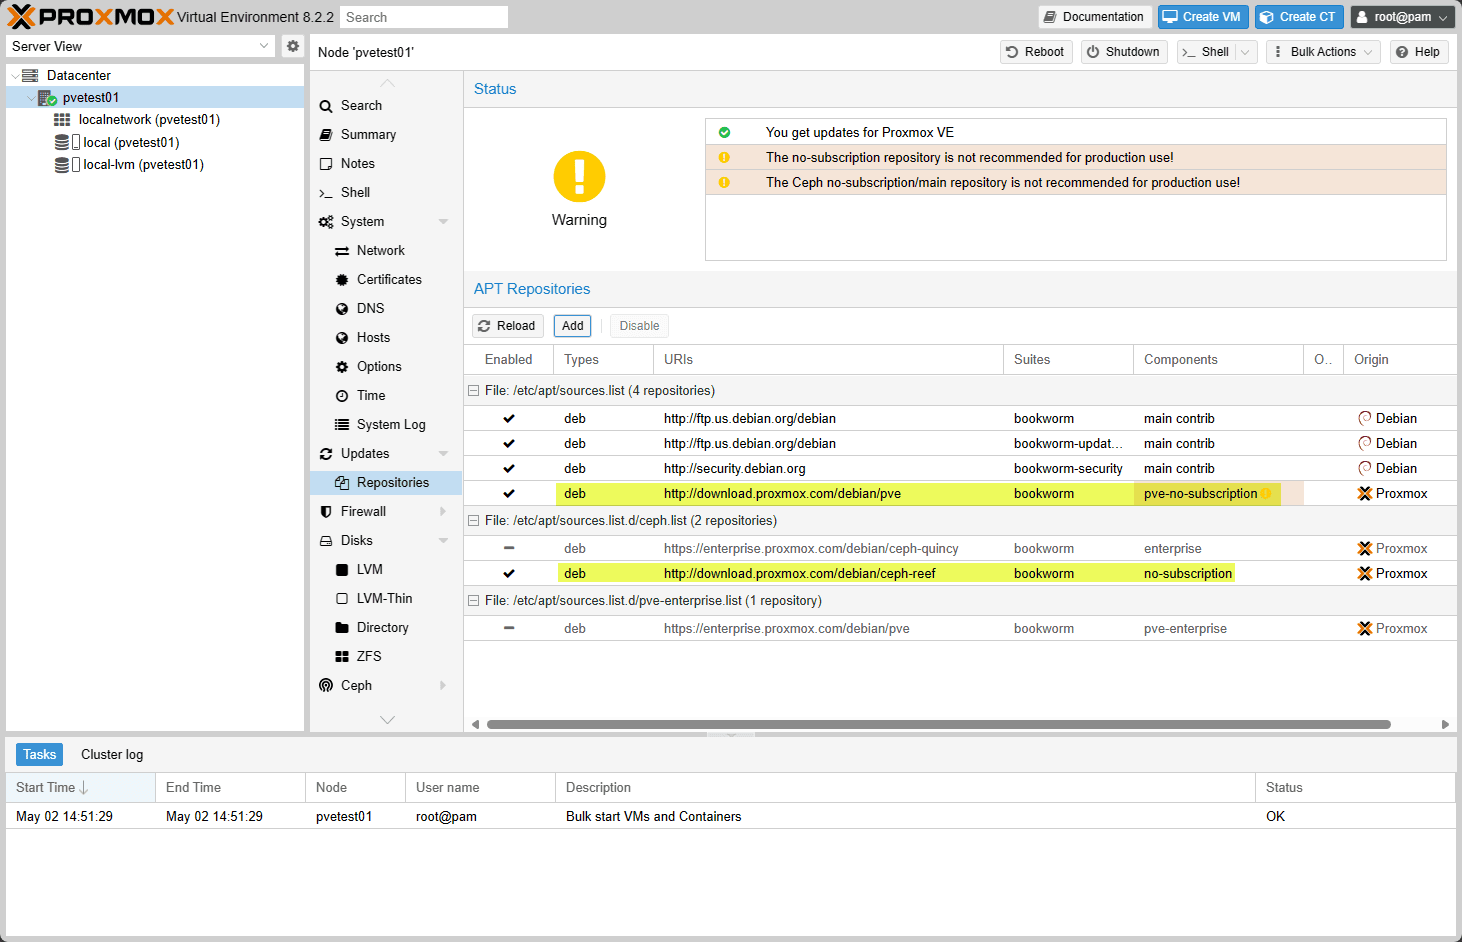 Nenhum repositório de assinatura foi adicionado ao servidor proxmox ve 1